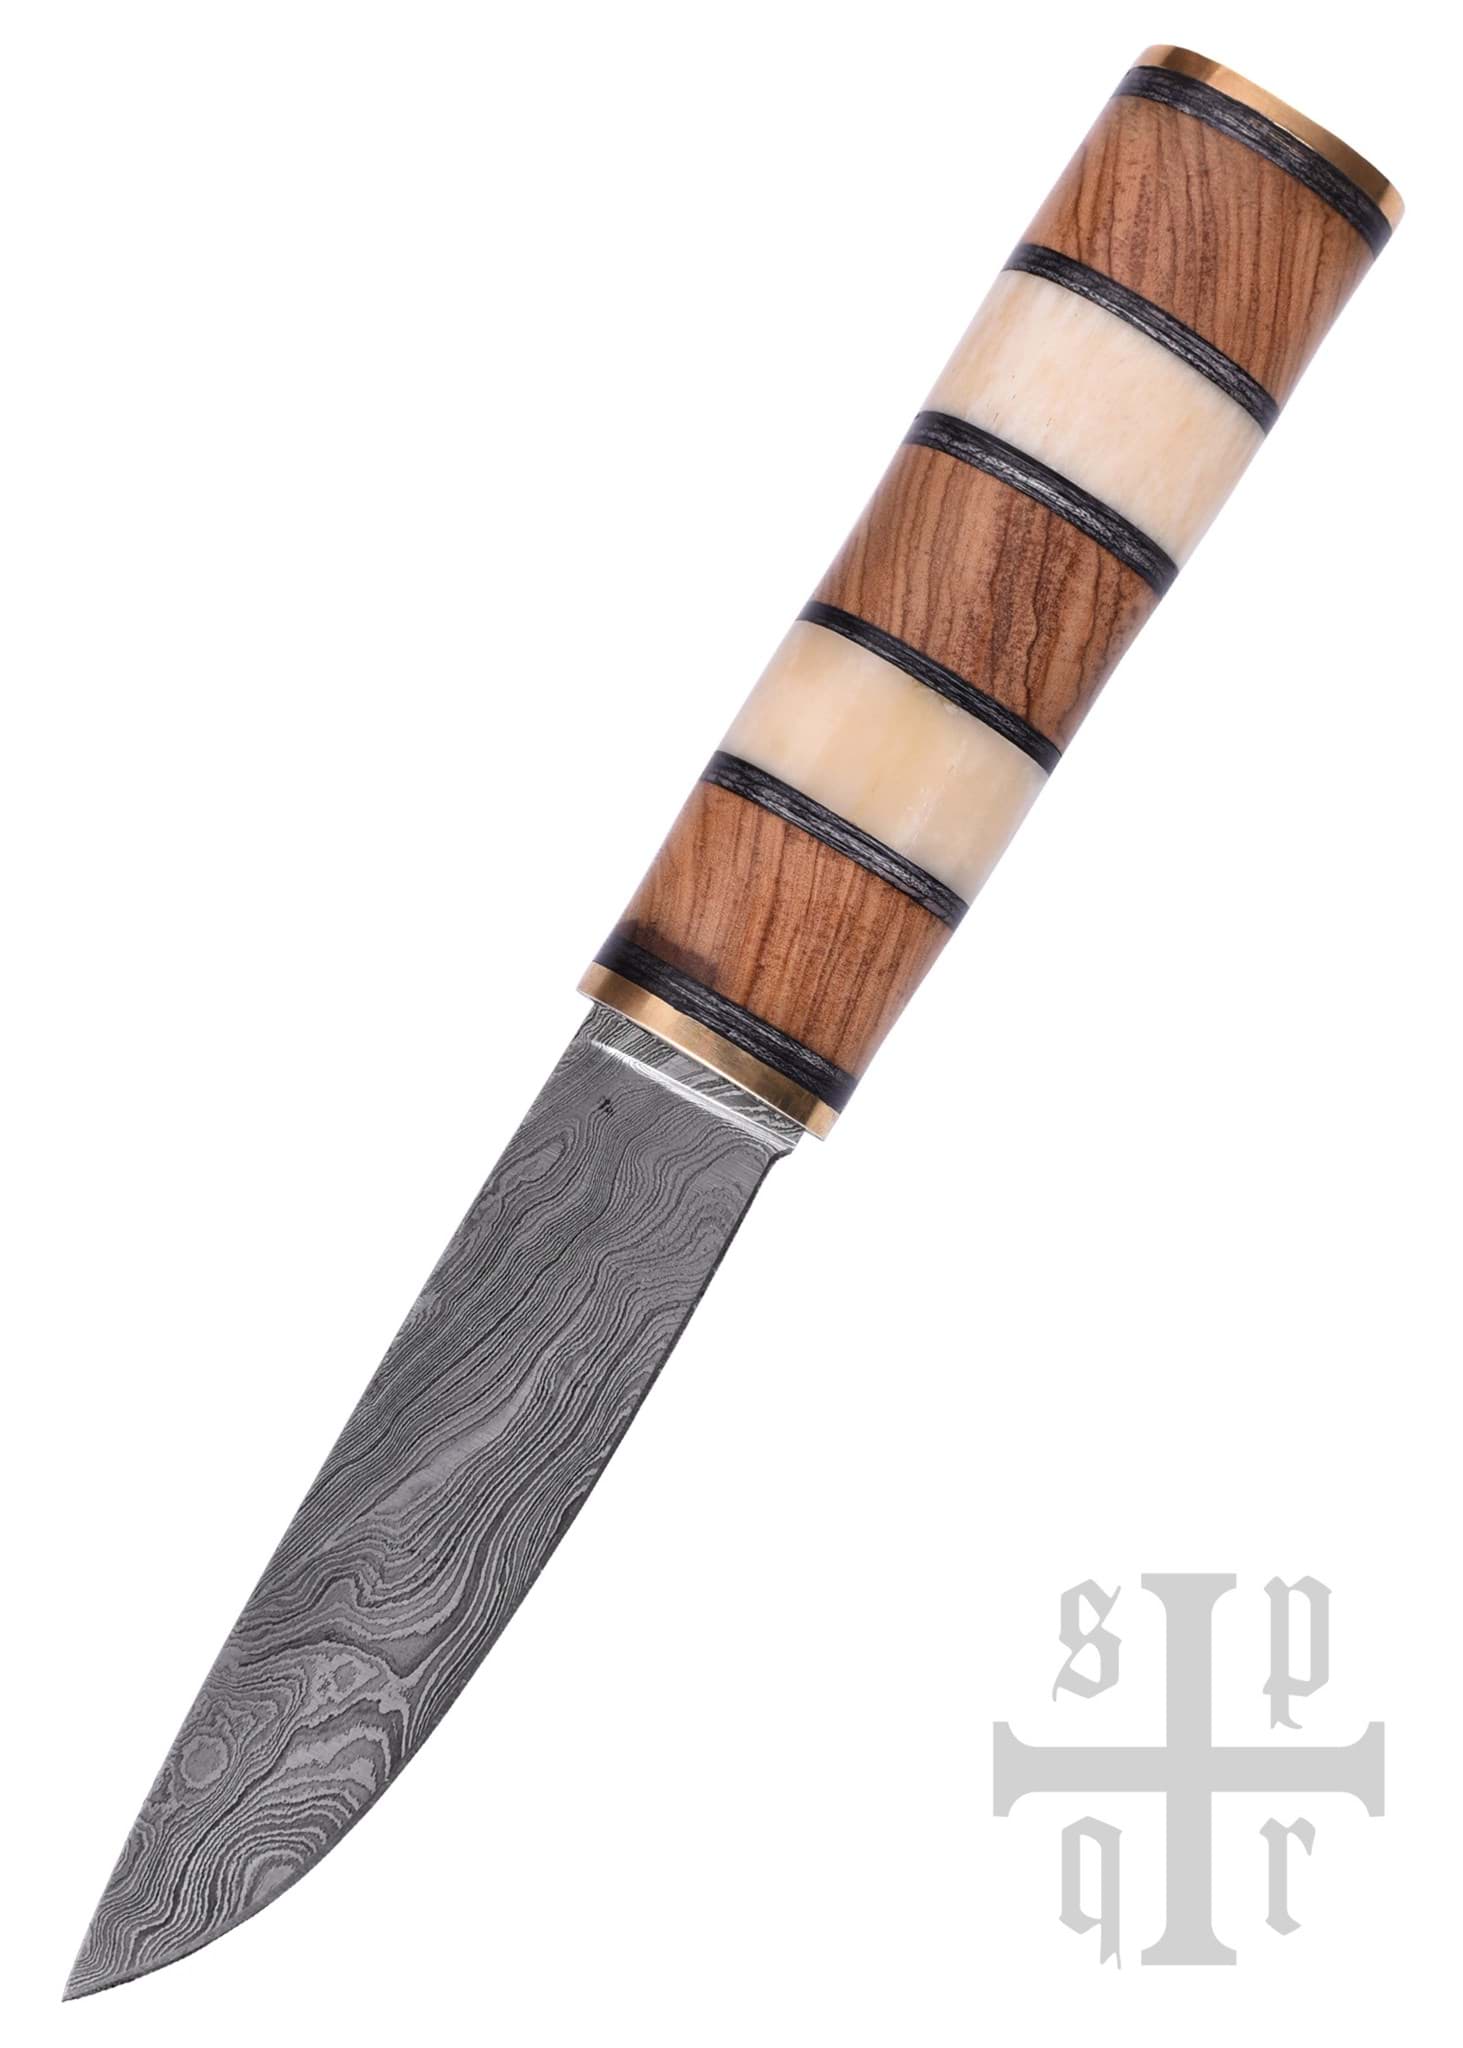 Immagine di SPQR - Messer vichingo in damasco con manico in legno e osso